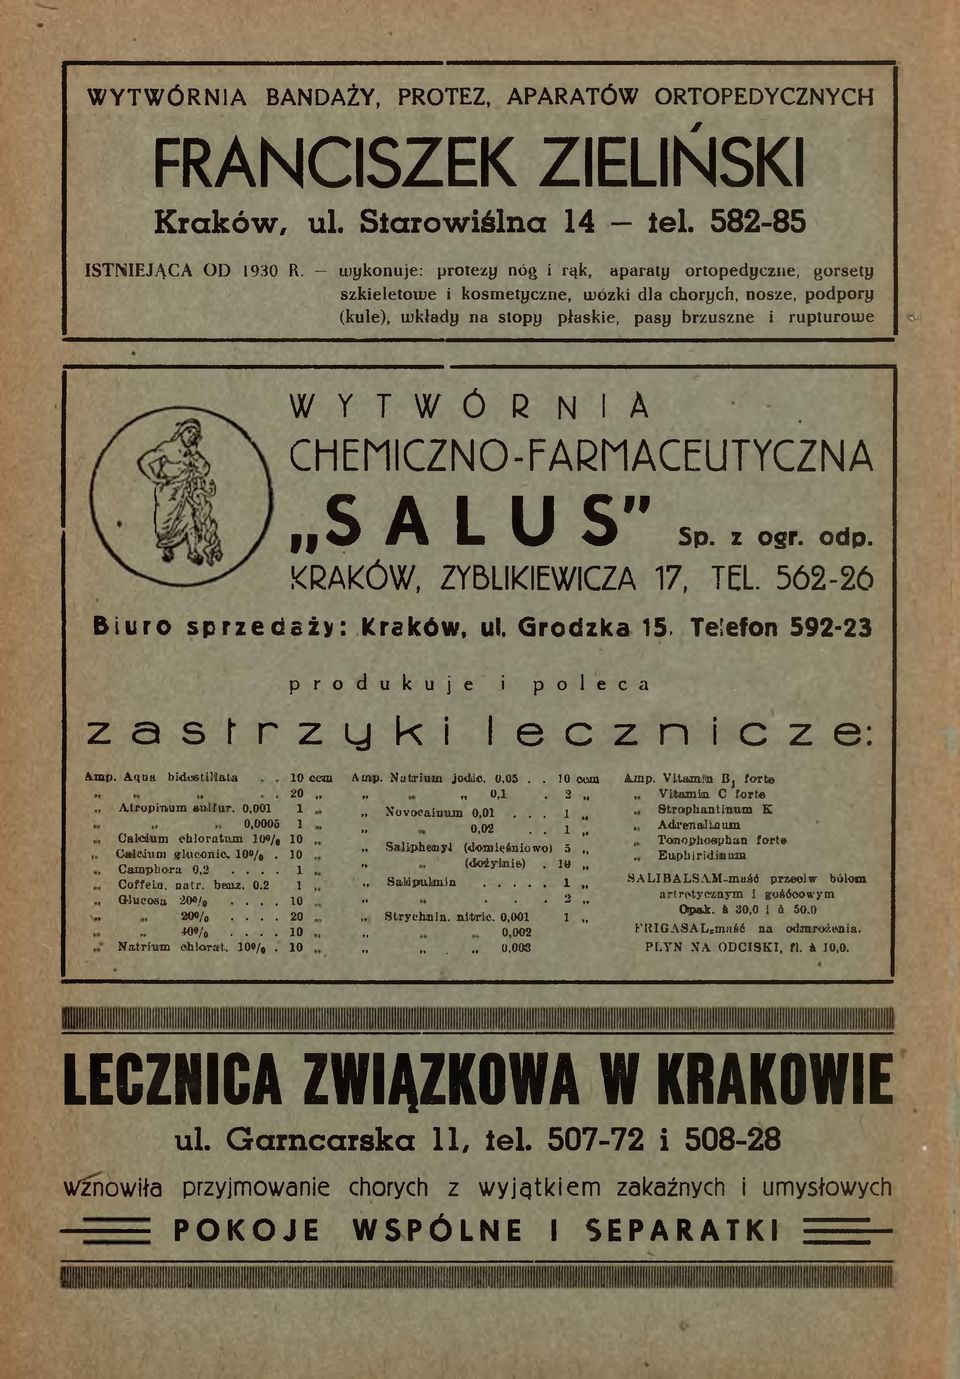 CHEMICZNO-FARMACEUTYCZNA SALUS" 91 Sp. z ogr. odp. KRAKÓW, ZYBLIKIEWICZA 17, TEL. 562-26 Biuro sprzedaży: Kraków, ul. Grodzka 15.